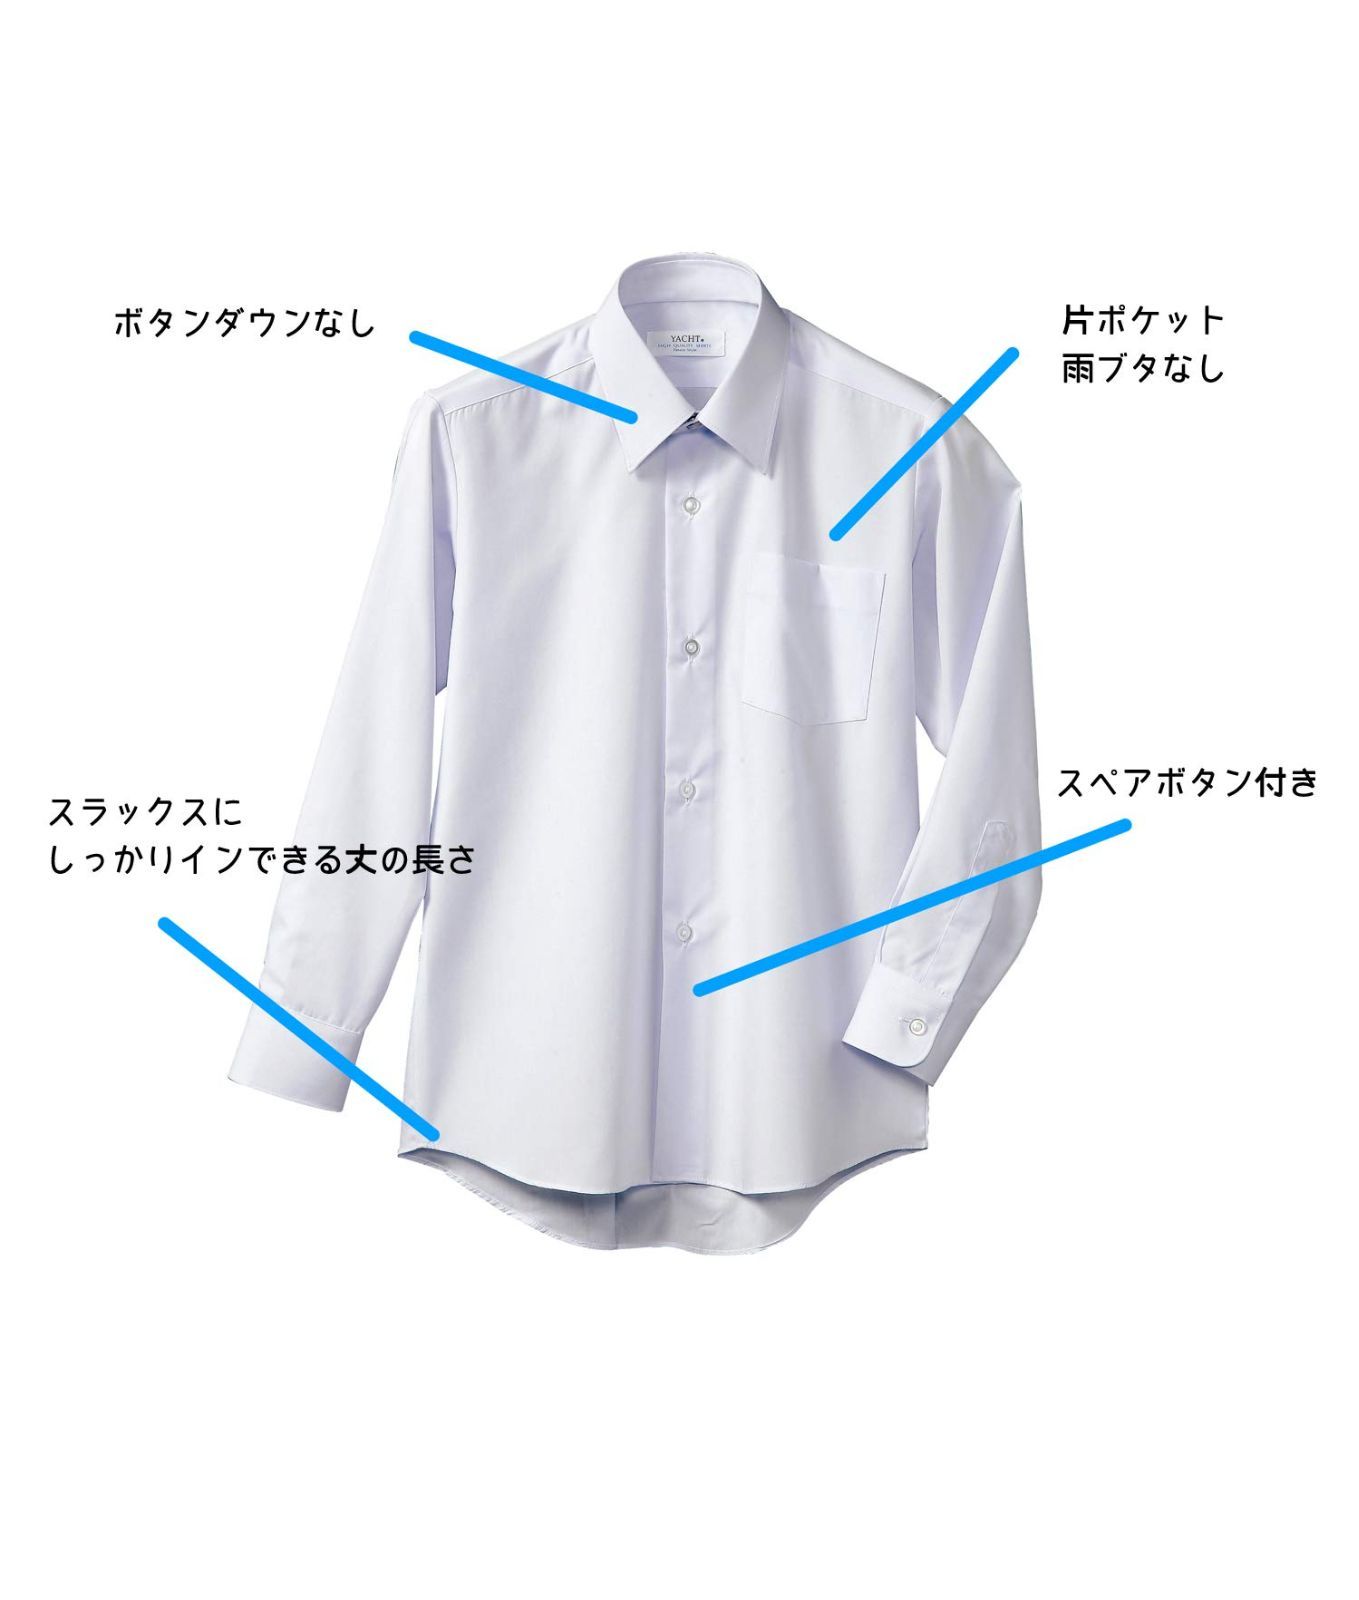 女性が喜ぶ♪ 長袖ニットシャツ 富士ヨット 男子 TSEASY01 長袖 白 角衿 形態安定 スクールシャツ カッター ラクシャツ ノーアイロン  ストレッチ